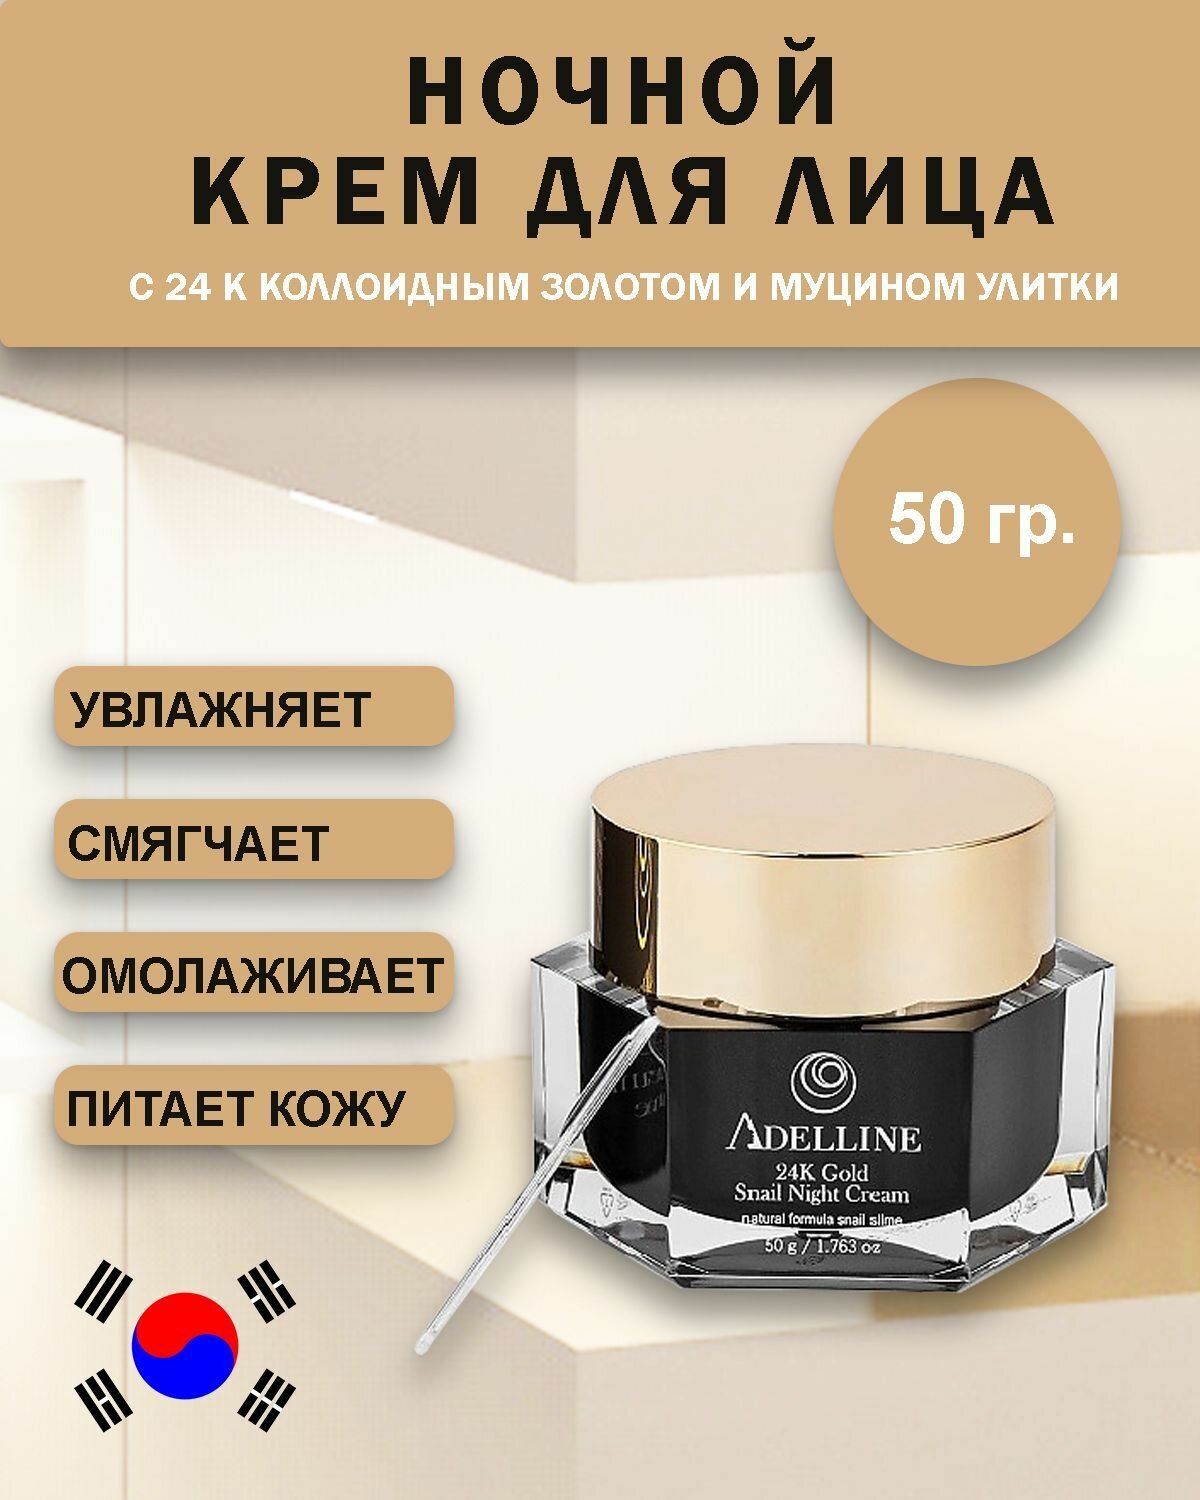 Ночной крем для лица антивозрастной Корея с коллоидным золотом и слизью улитки Adelline 24K Gold Snail Night Cream (50 гр)